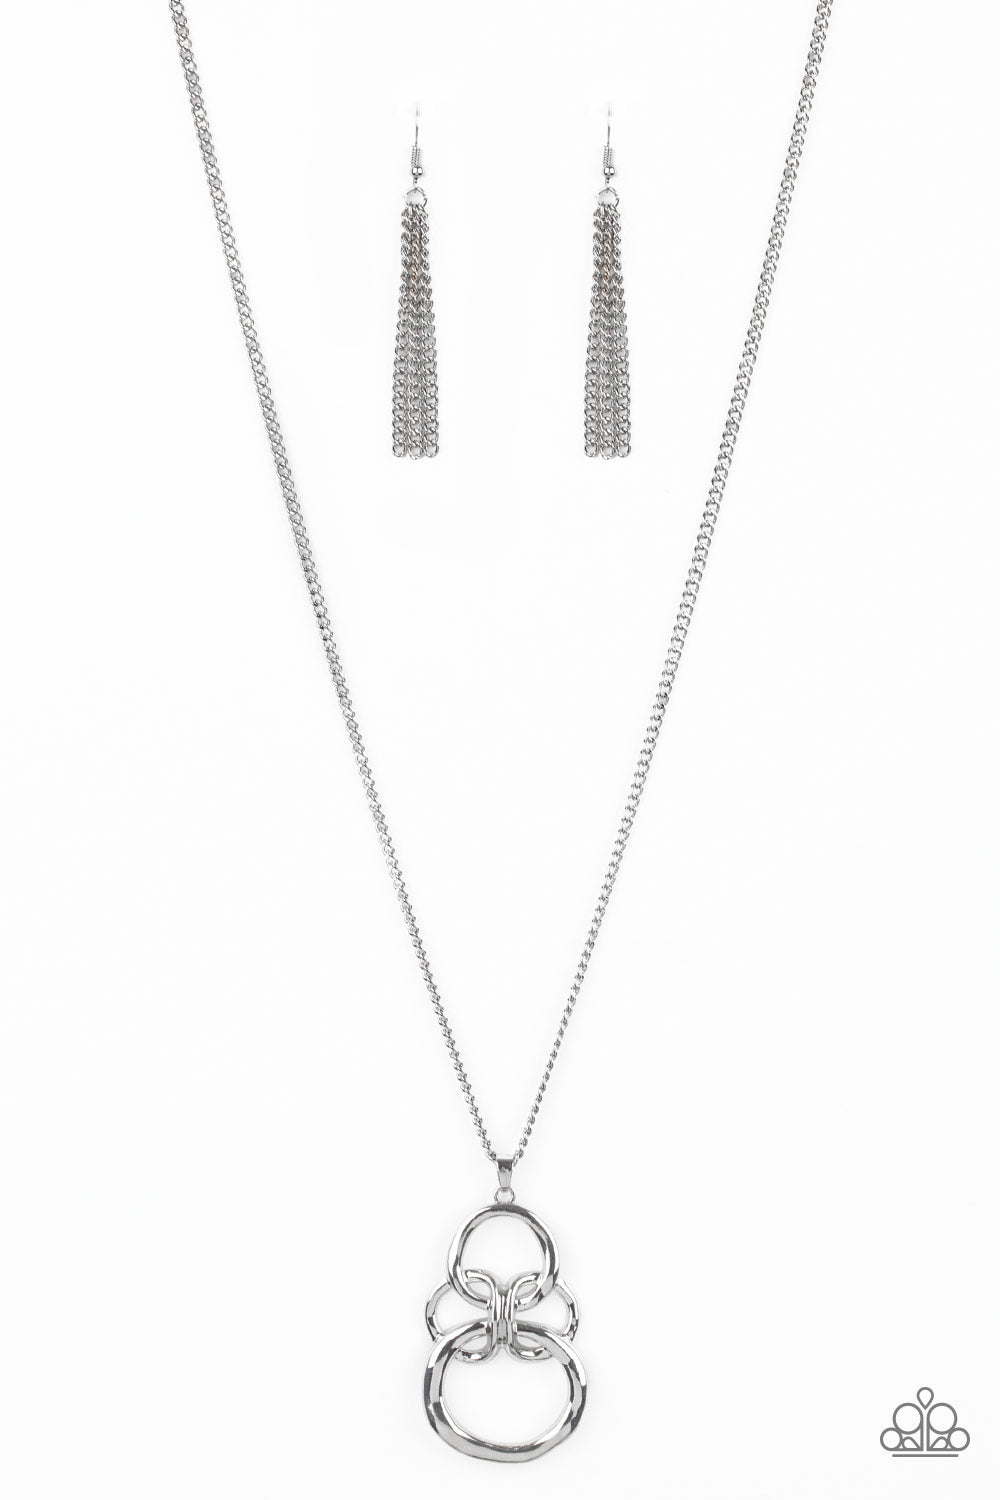 Courageous Contour - Silver Necklace Set